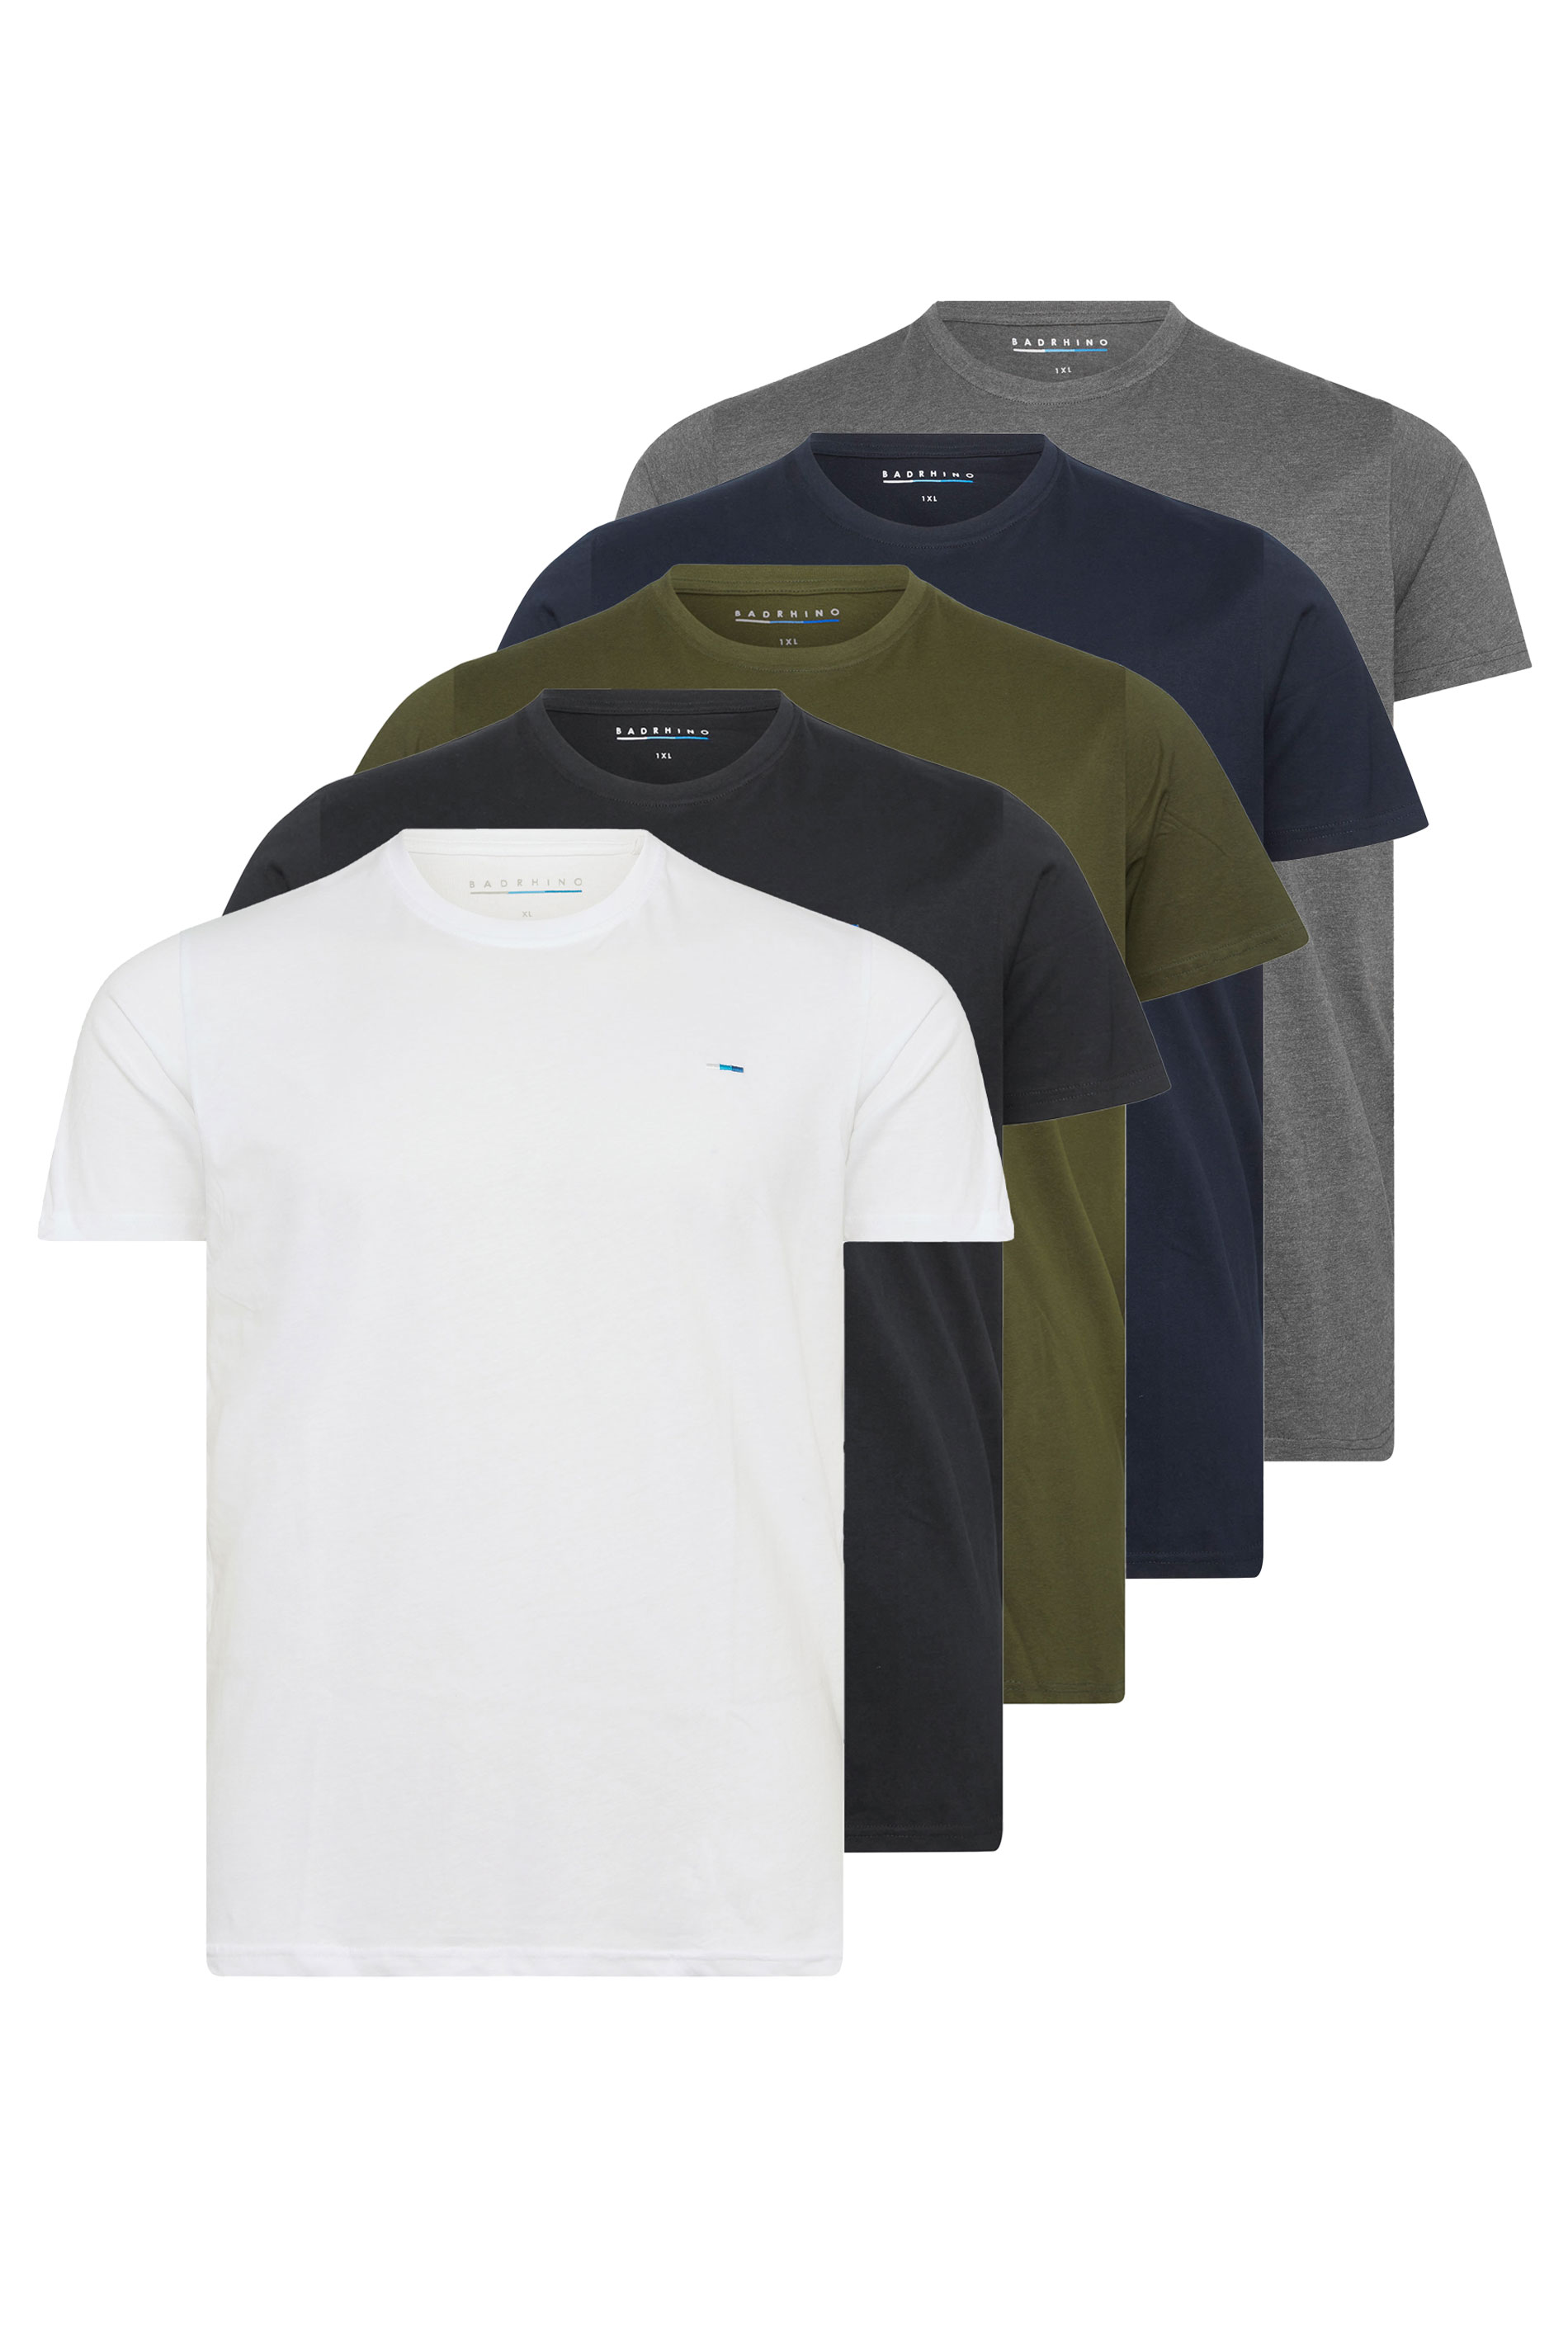 BadRhino Big & Tall 5 Pack Black & White Core T-Shirts | BadRhino 2